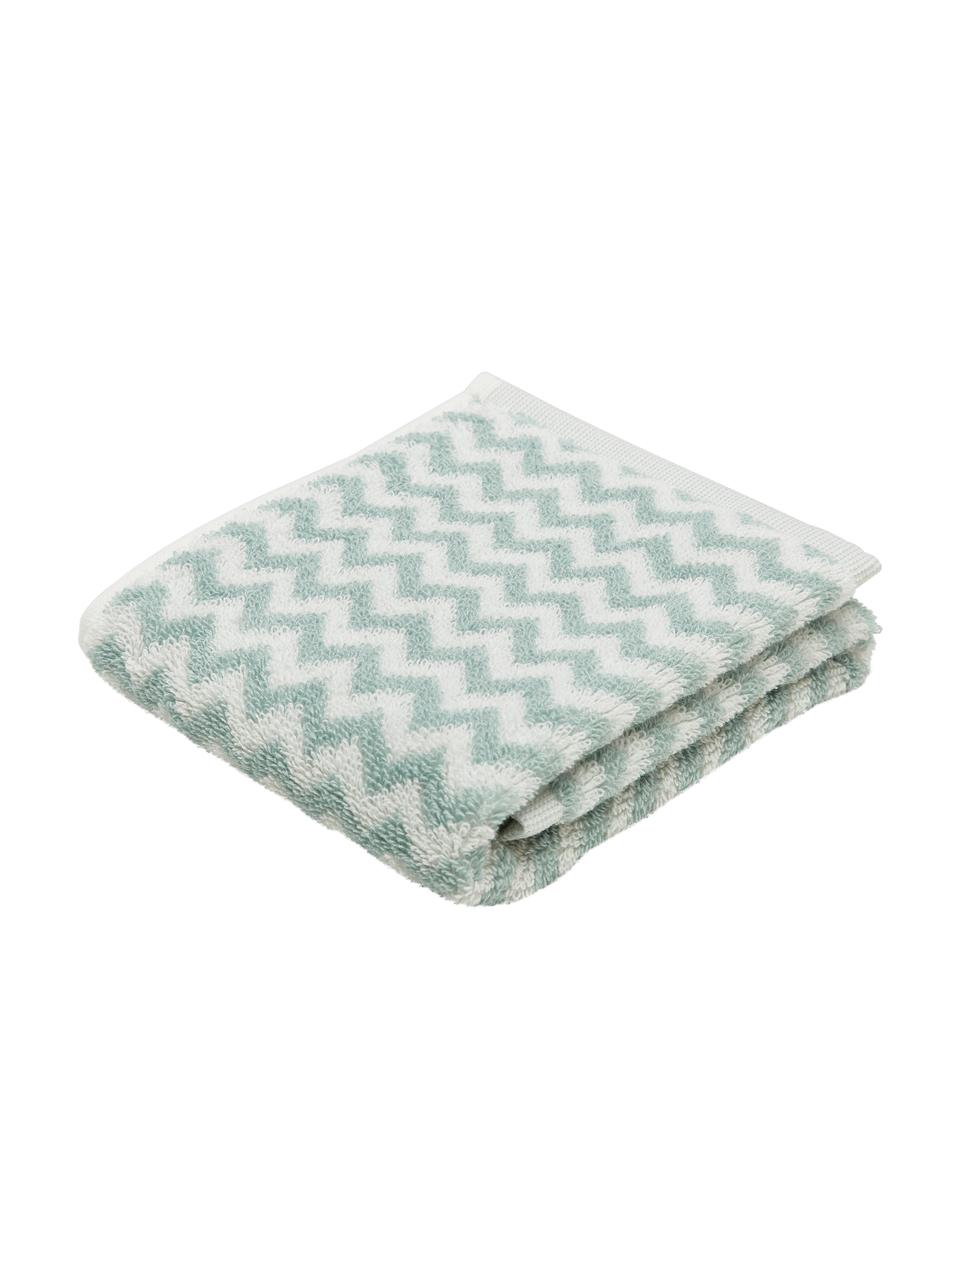 Ręcznik Liv, 2 szt., Zielony, biały, Ręcznik dla gości, S 30 x D 50 cm, 2 szt.